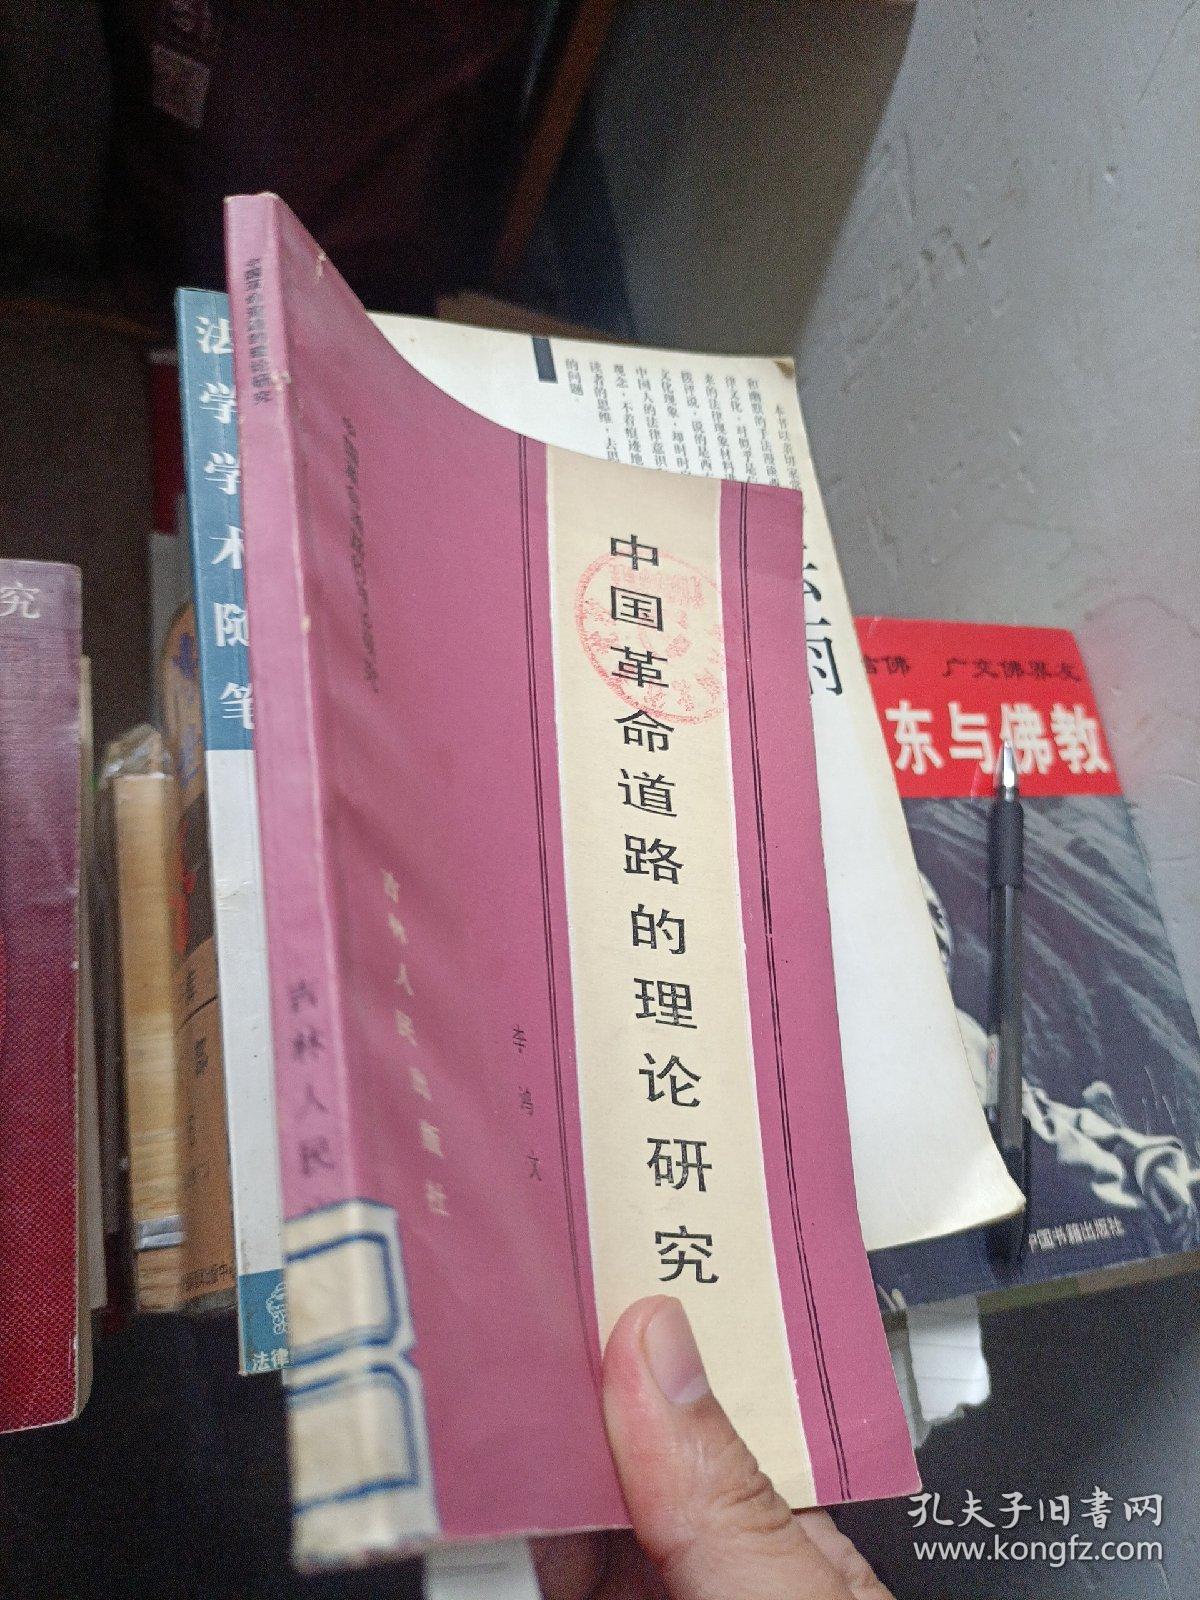 中国革命道路的理论研究
1984年一版一印